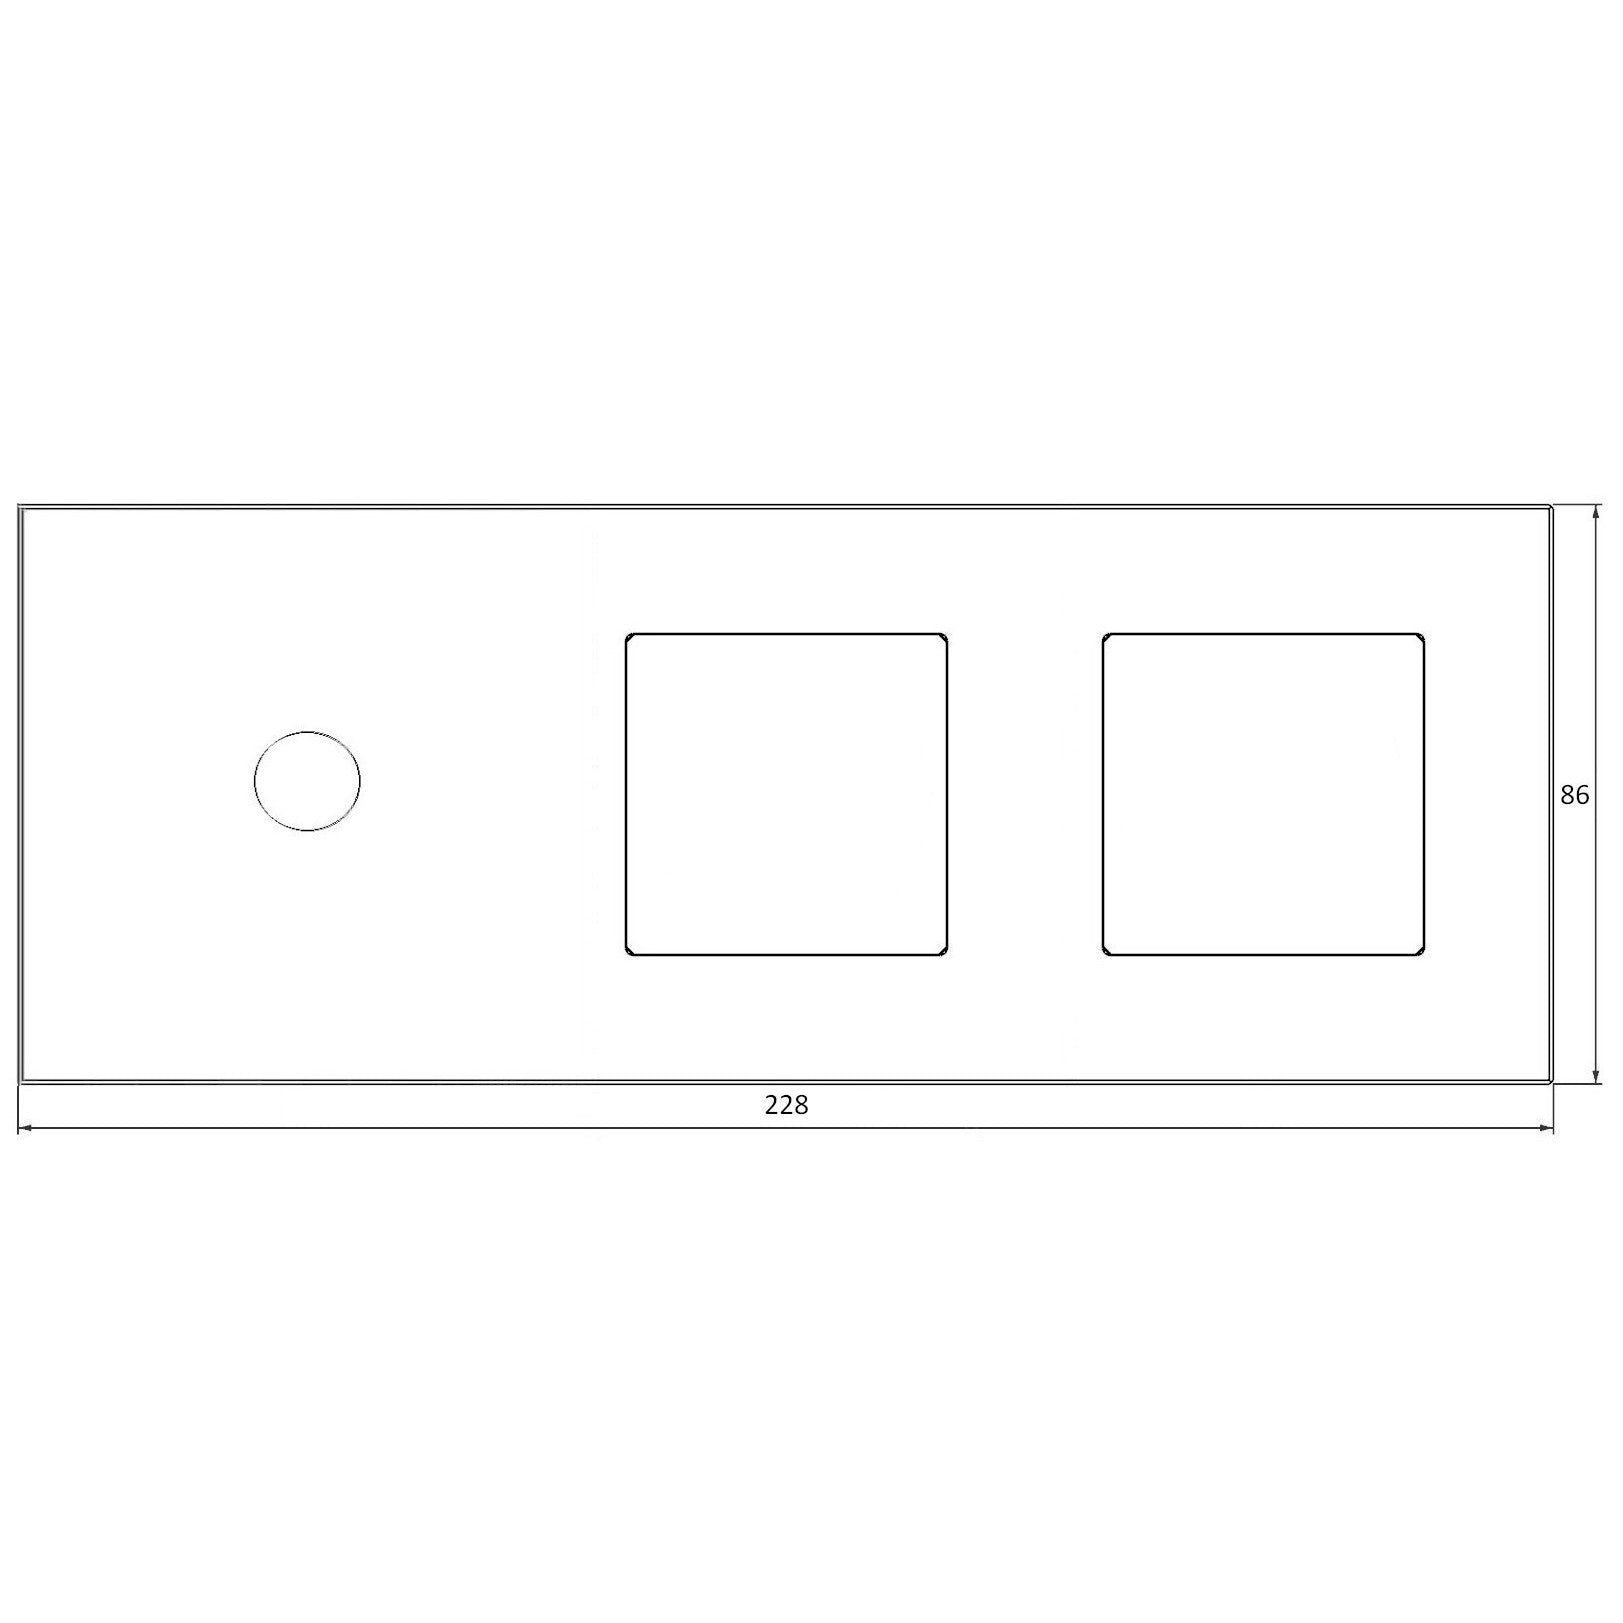 Panel de vidrio de 3 módulos y 2 marcos, blanco